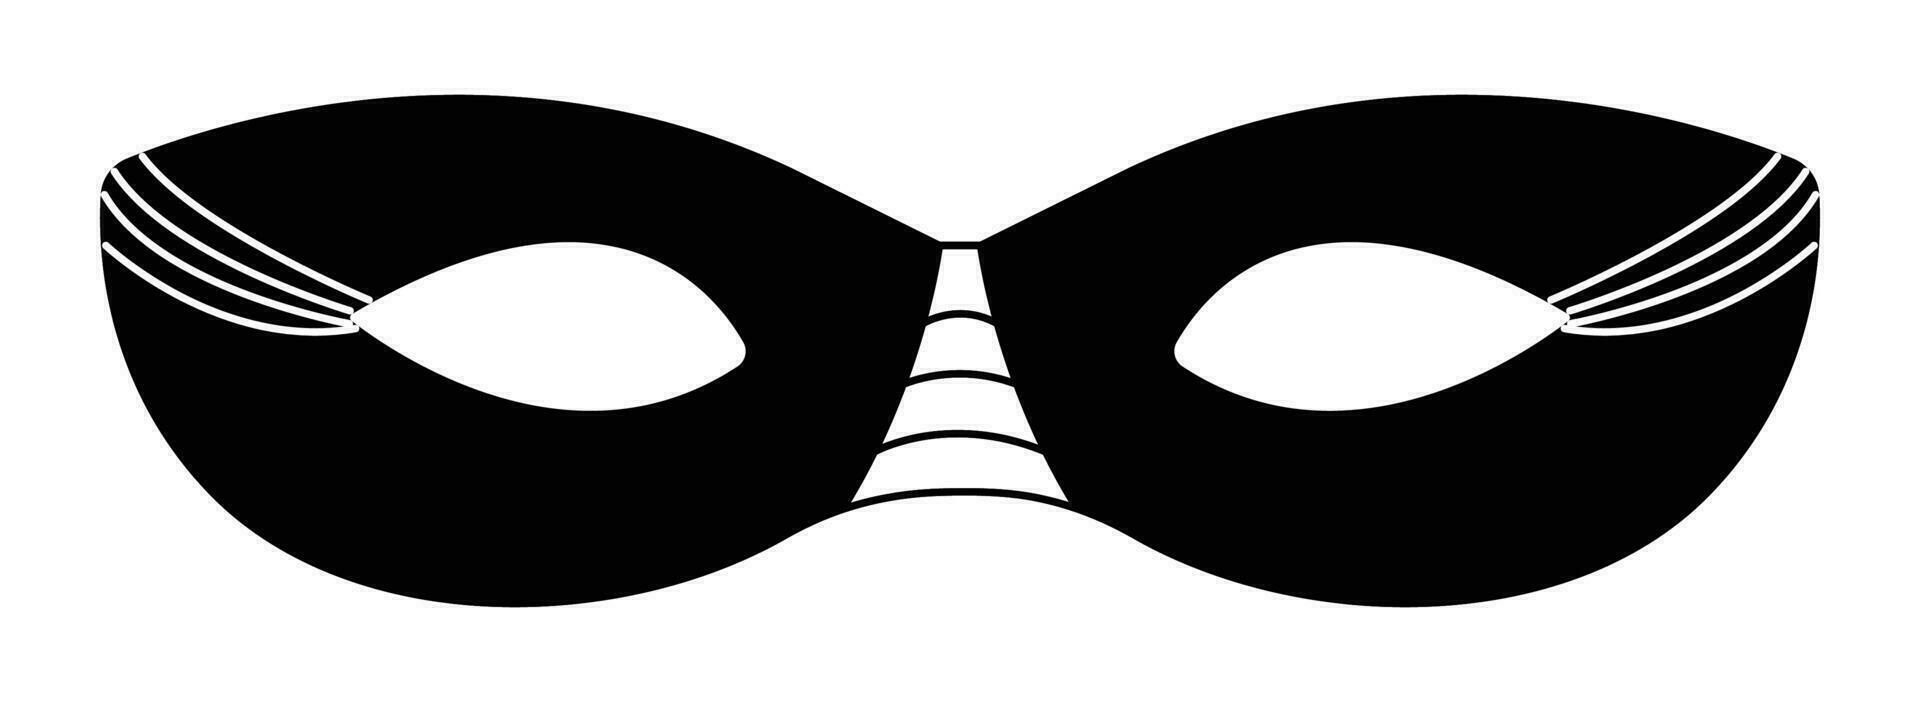 negro y blanco sencillo ojo mascarada mascarilla, vector simplificado atributo de un carnaval disfraz